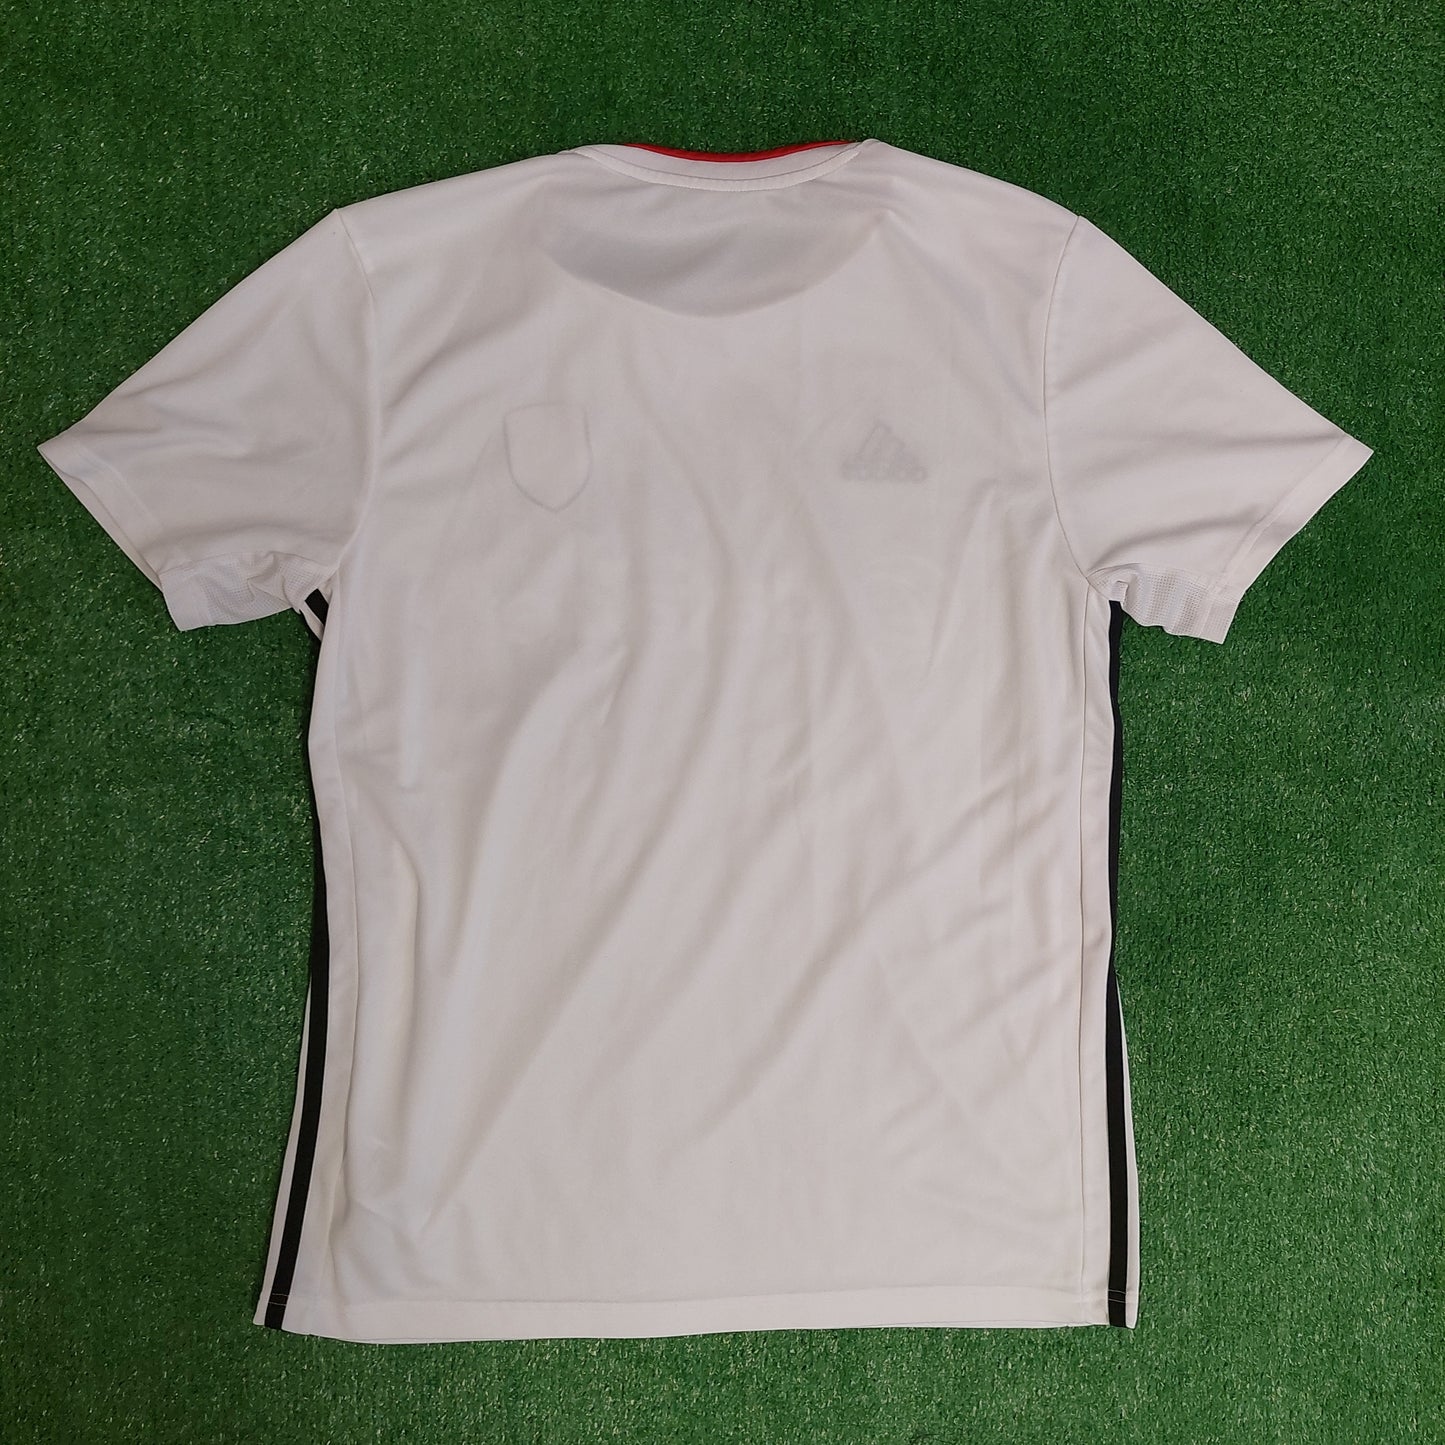 Fulham 2019/20 Home Shirt (Excellent) - Size L